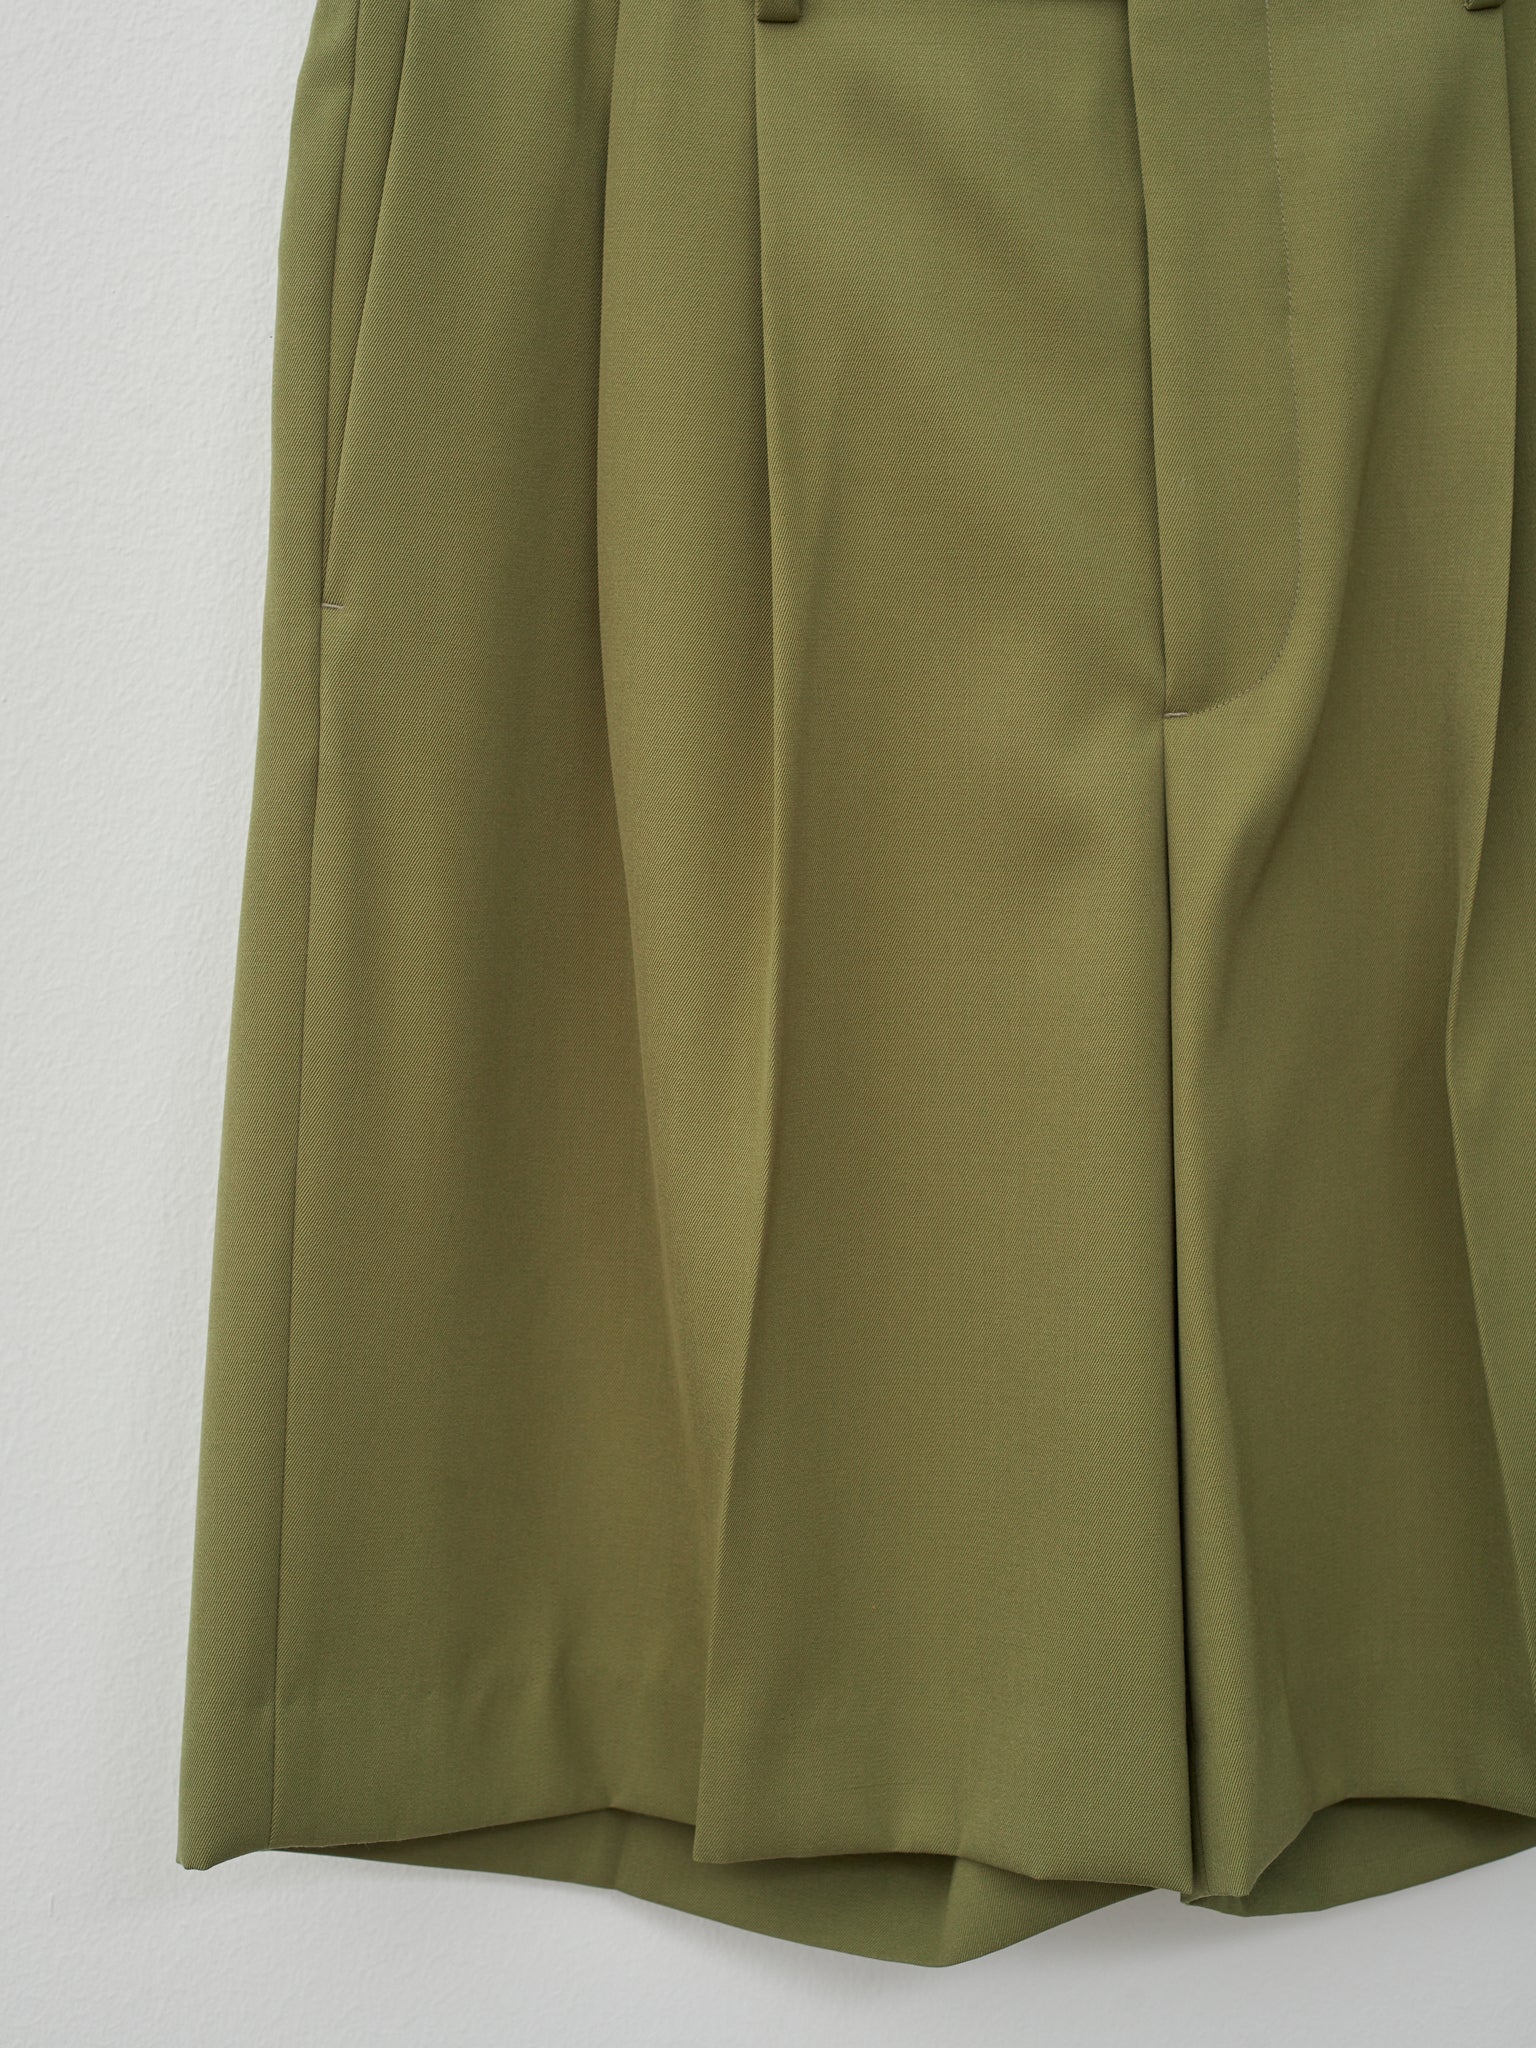 Namu Shop - Auralee Light Wool Max Gabardine Shorts - Khaki